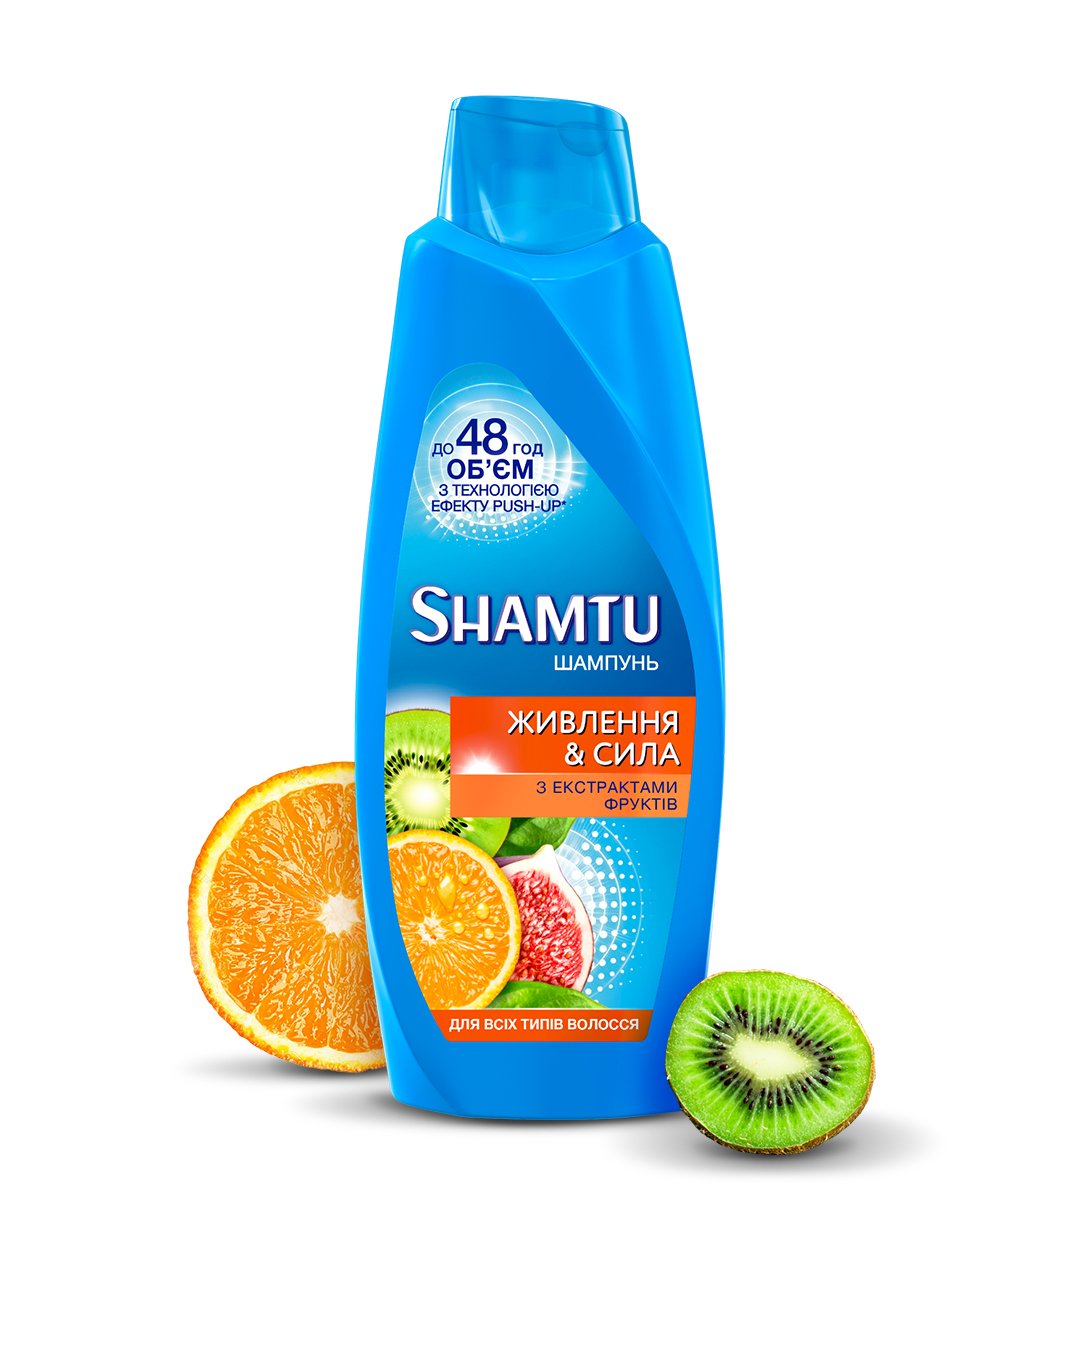 Шампунь Shamtu Питание и Сила, c экстрактами фруктов, для всех типов волос, 600 мл - фото 2